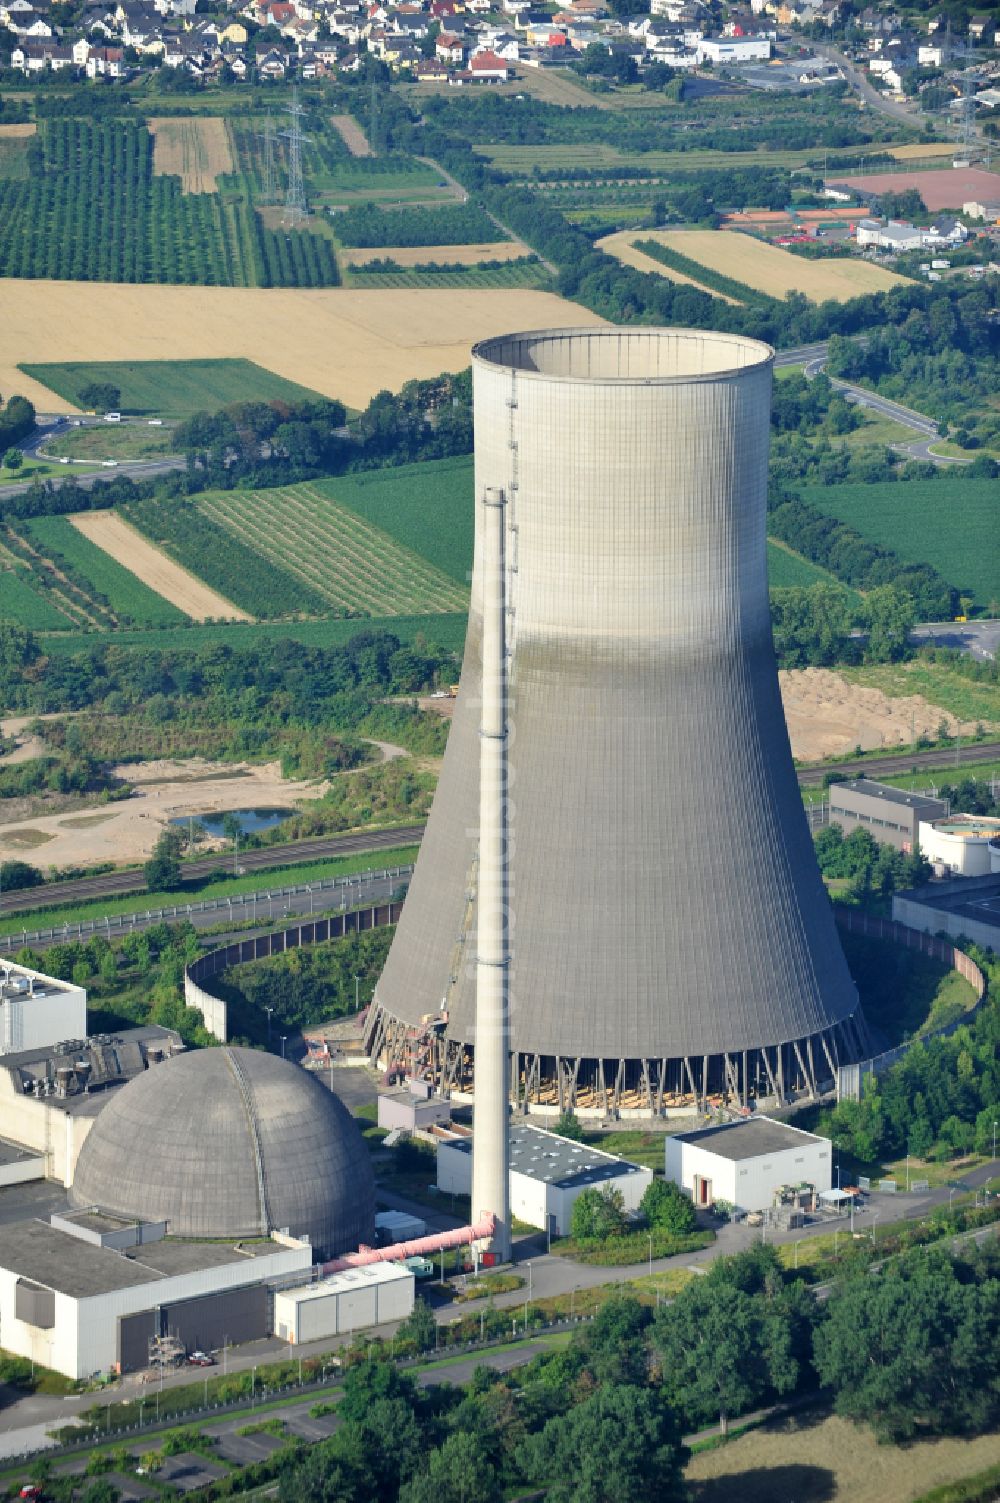 Mülheim-Kärlich von oben - Reaktorblöcke und Anlagen des AKW - KKW Kernkraftwerk in Mülheim-Kärlich im Bundesland Rheinland-Pfalz, Deutschland